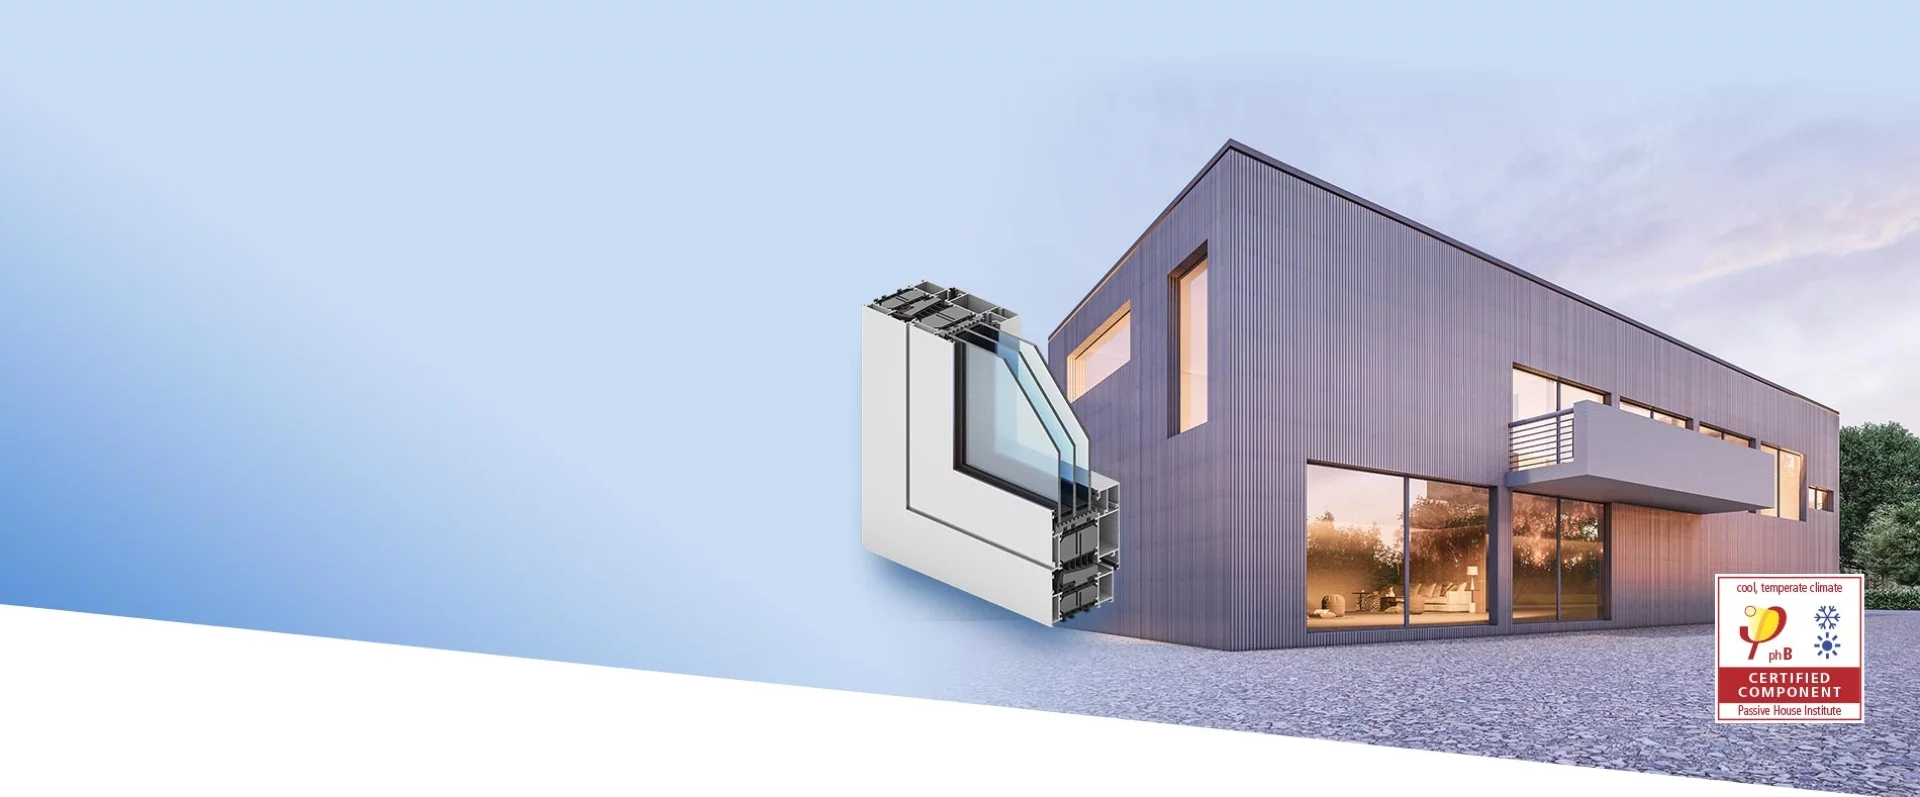 Ново в офертата GENESIS 90 Модерна алуминиева система, предназначена за изграждане на прозорци с повишена топлоизолация, отговаряща на изискванията на сертификата на Институт за пасивни къщи за конструкции с топлоизолация Uw < 0.8 W/m2·K 